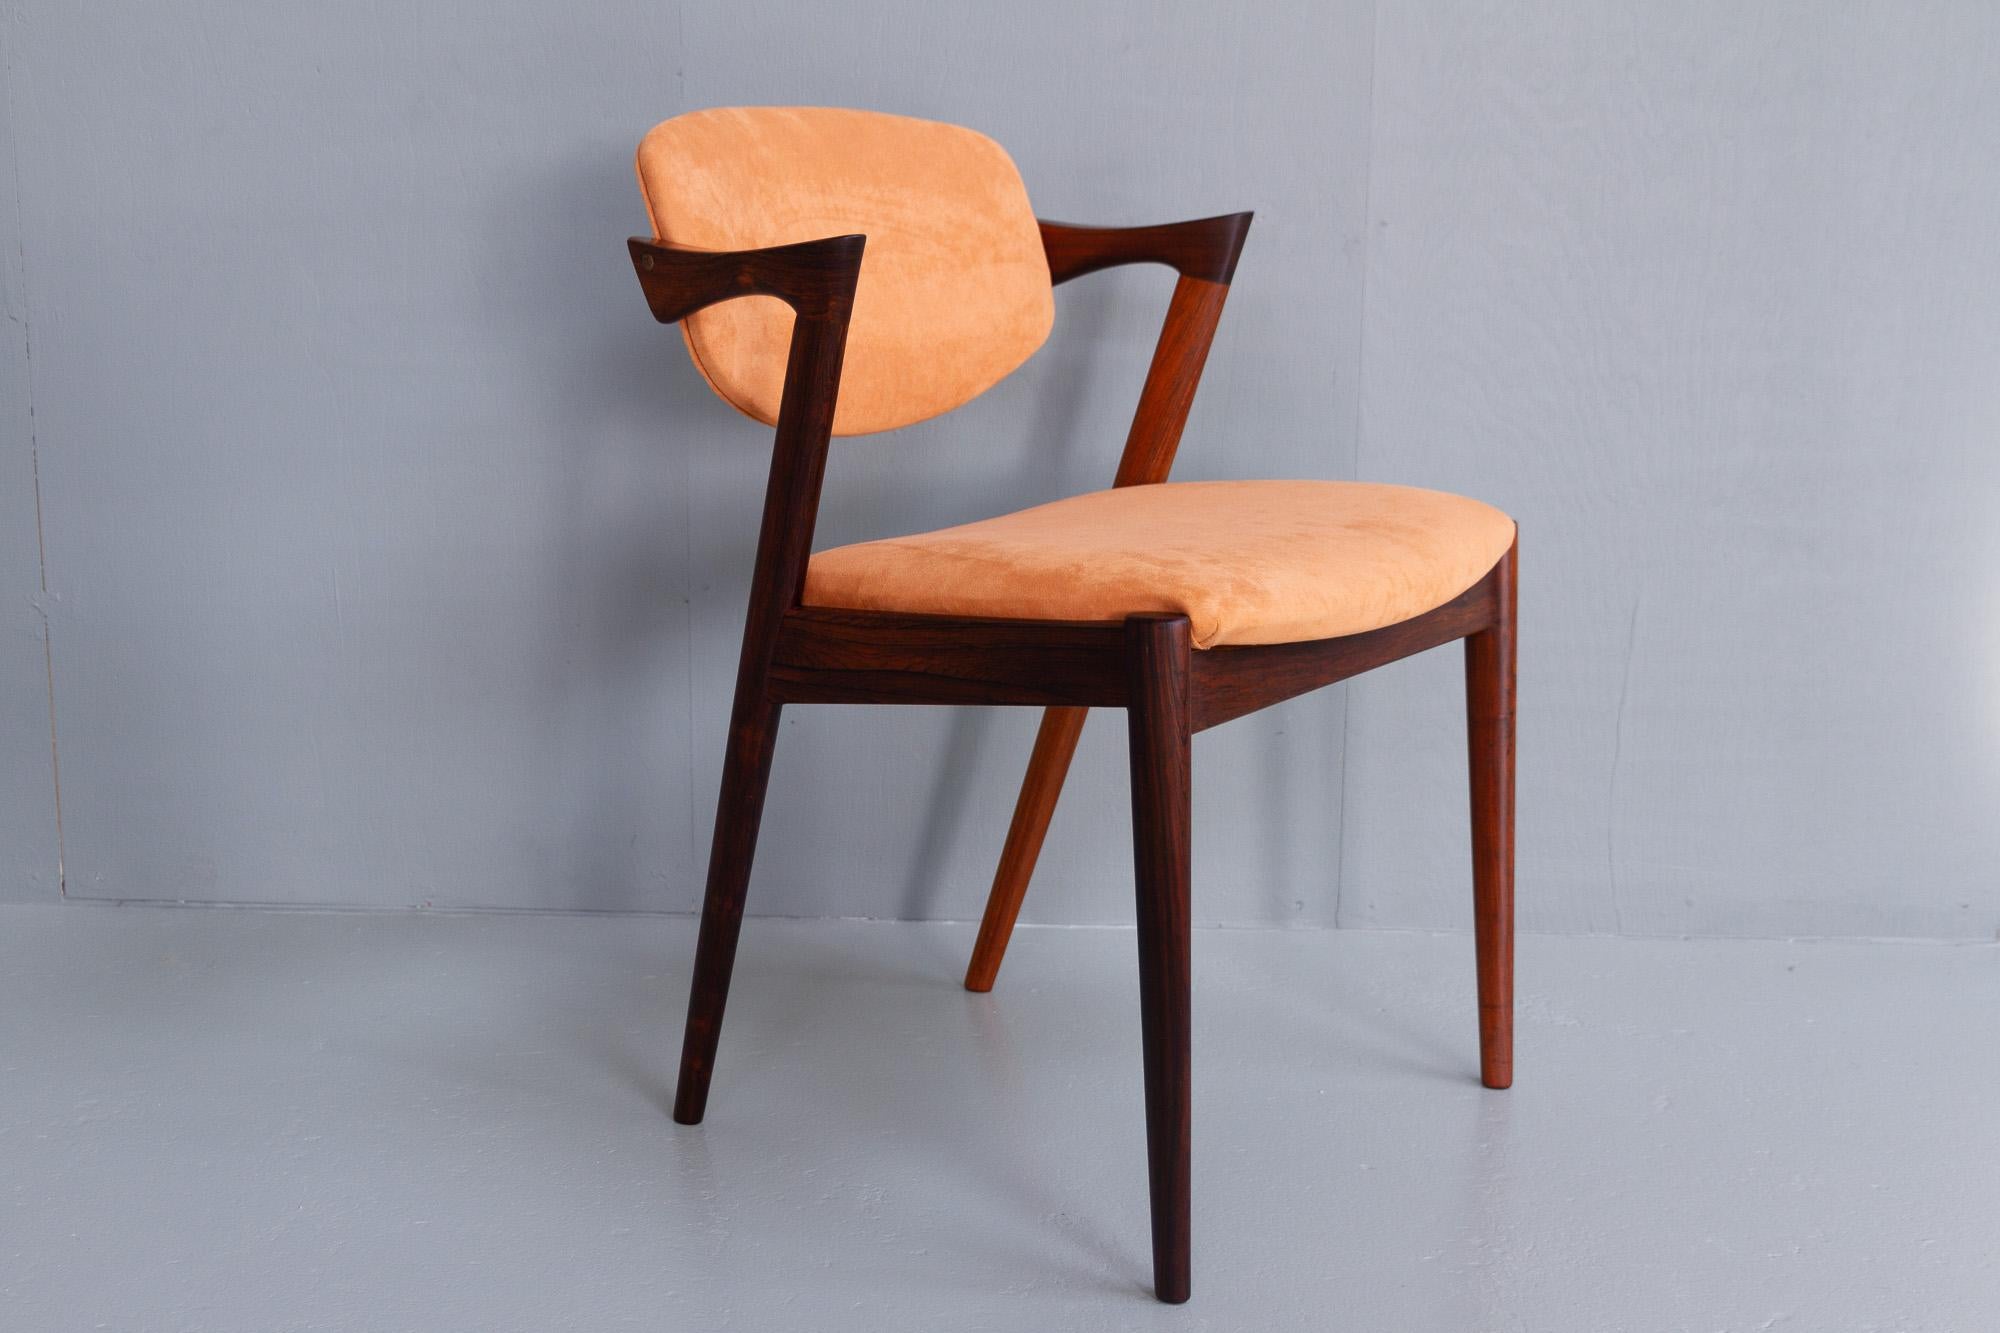 Vintage Danish Modern Rosewood Stuhl Modell 42 von Kai Kristiansen, 1960er Jahre.
Mid-Century Modern Sessel, entworfen vom dänischen Architekten Kai Kristiansen in den 1950er Jahren und hergestellt von der Schou Andersen Møbelfabrik,